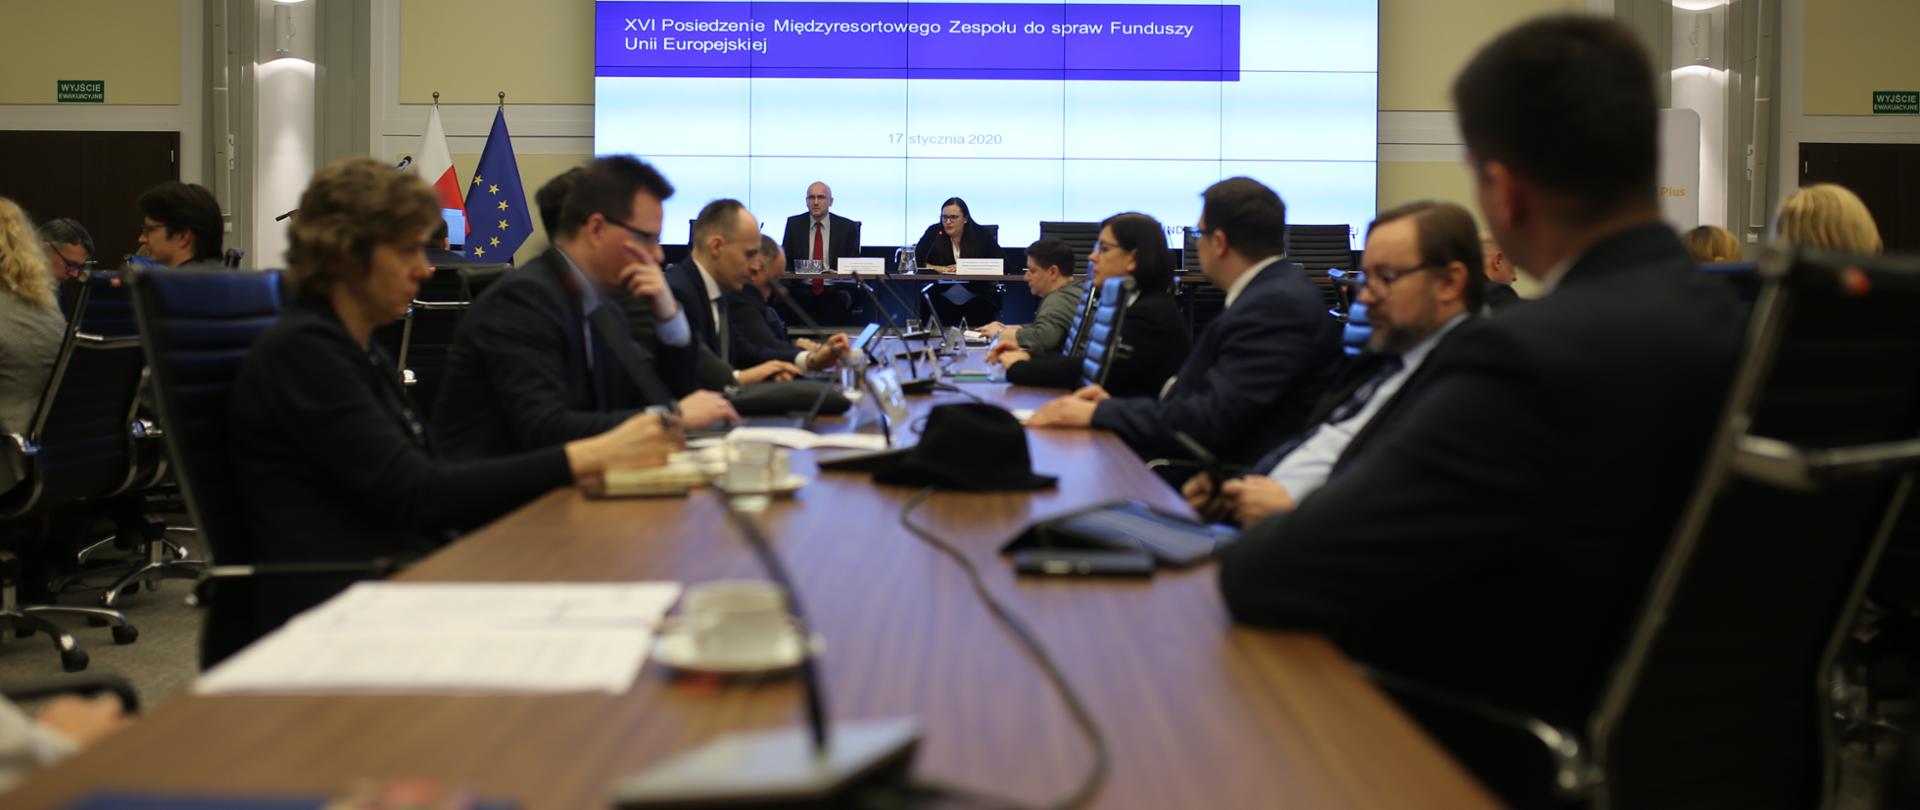 Na zdjęciu sala konferencyjna, na pierwszym planie stół, przy nim siedzą uczestnicy spotkania, w tle stół prezydialny, przy nim siedzi minister Małgorzata Jarosińska-Jedynak.